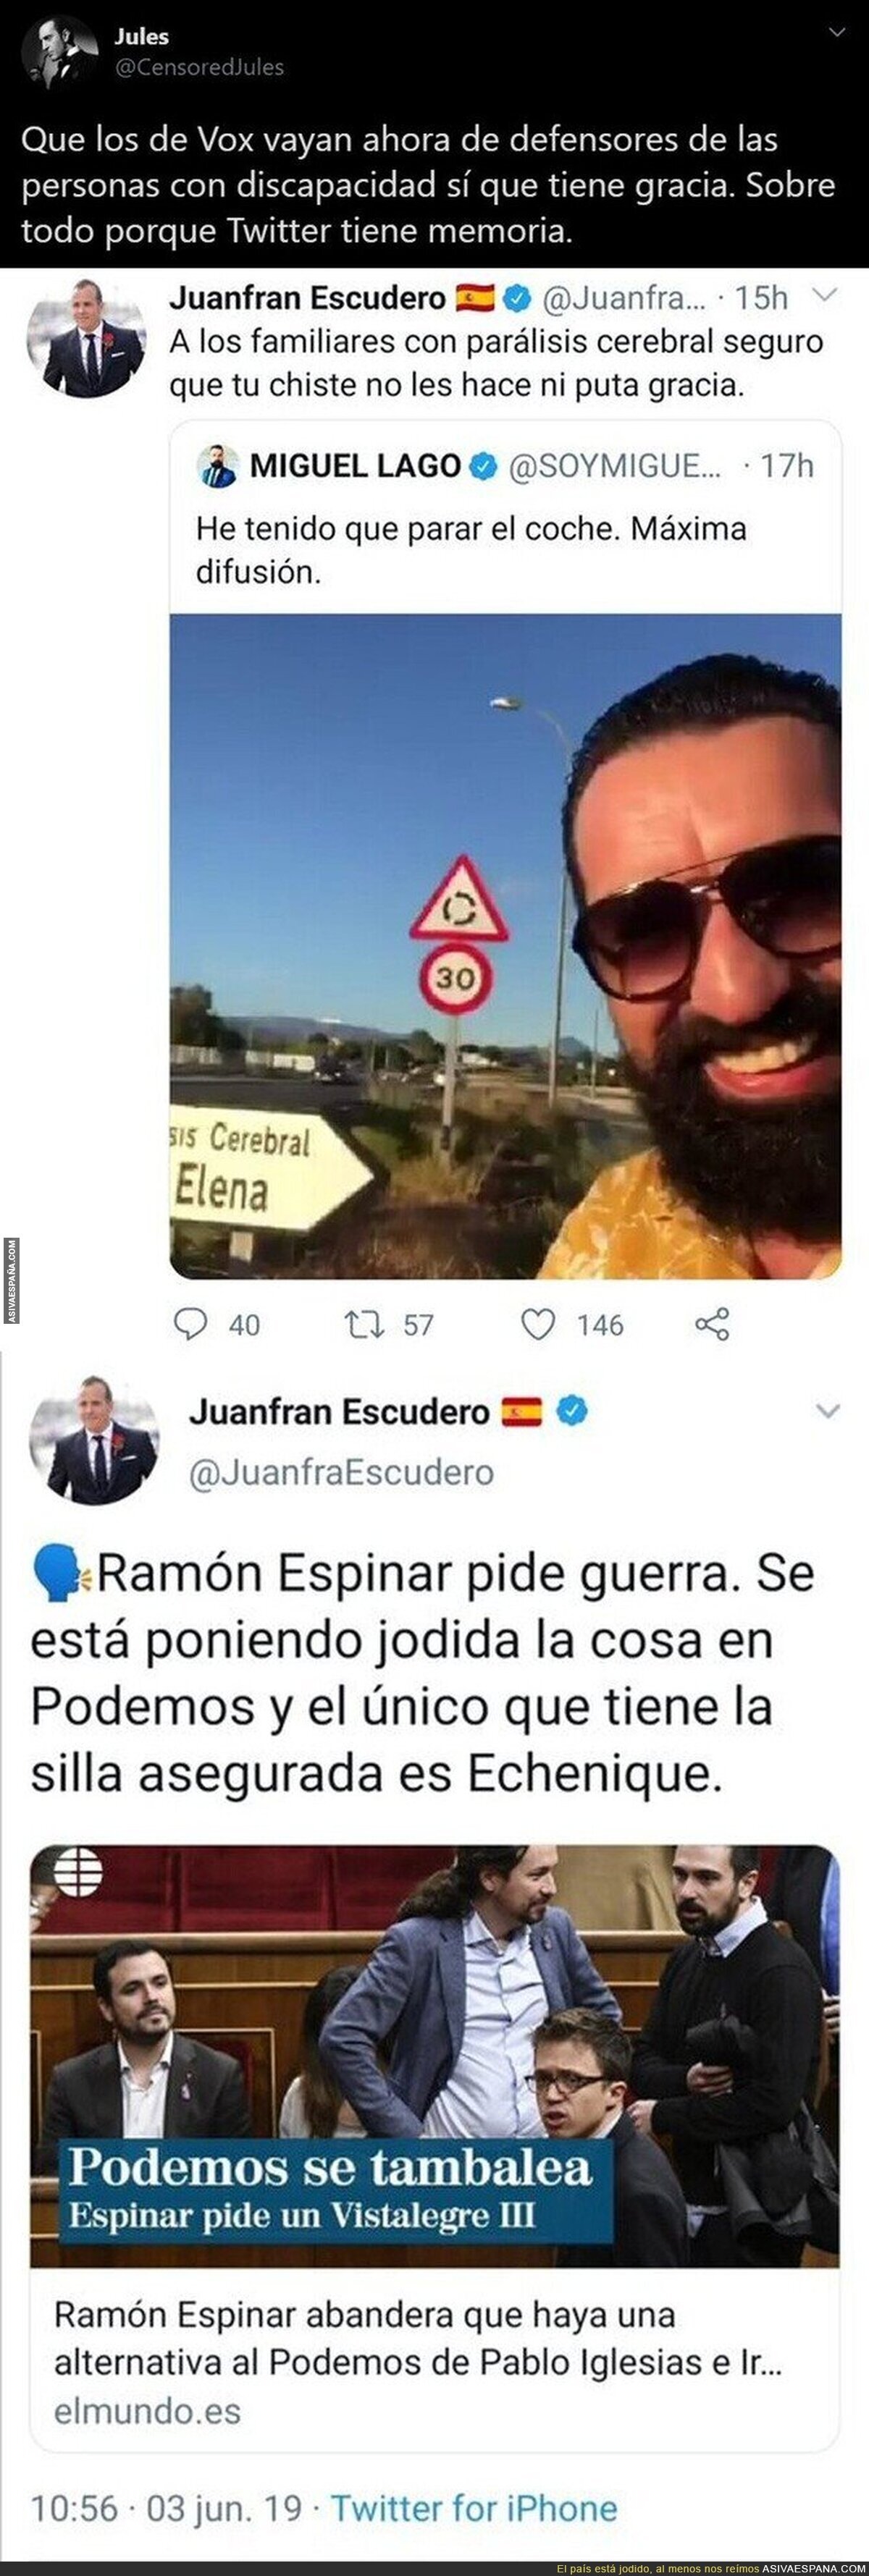 Juanfran Escudero queda totalmente retratado después de ofenderse por humor negro tras él haber tuiteado esto sobre Pablo Echenique